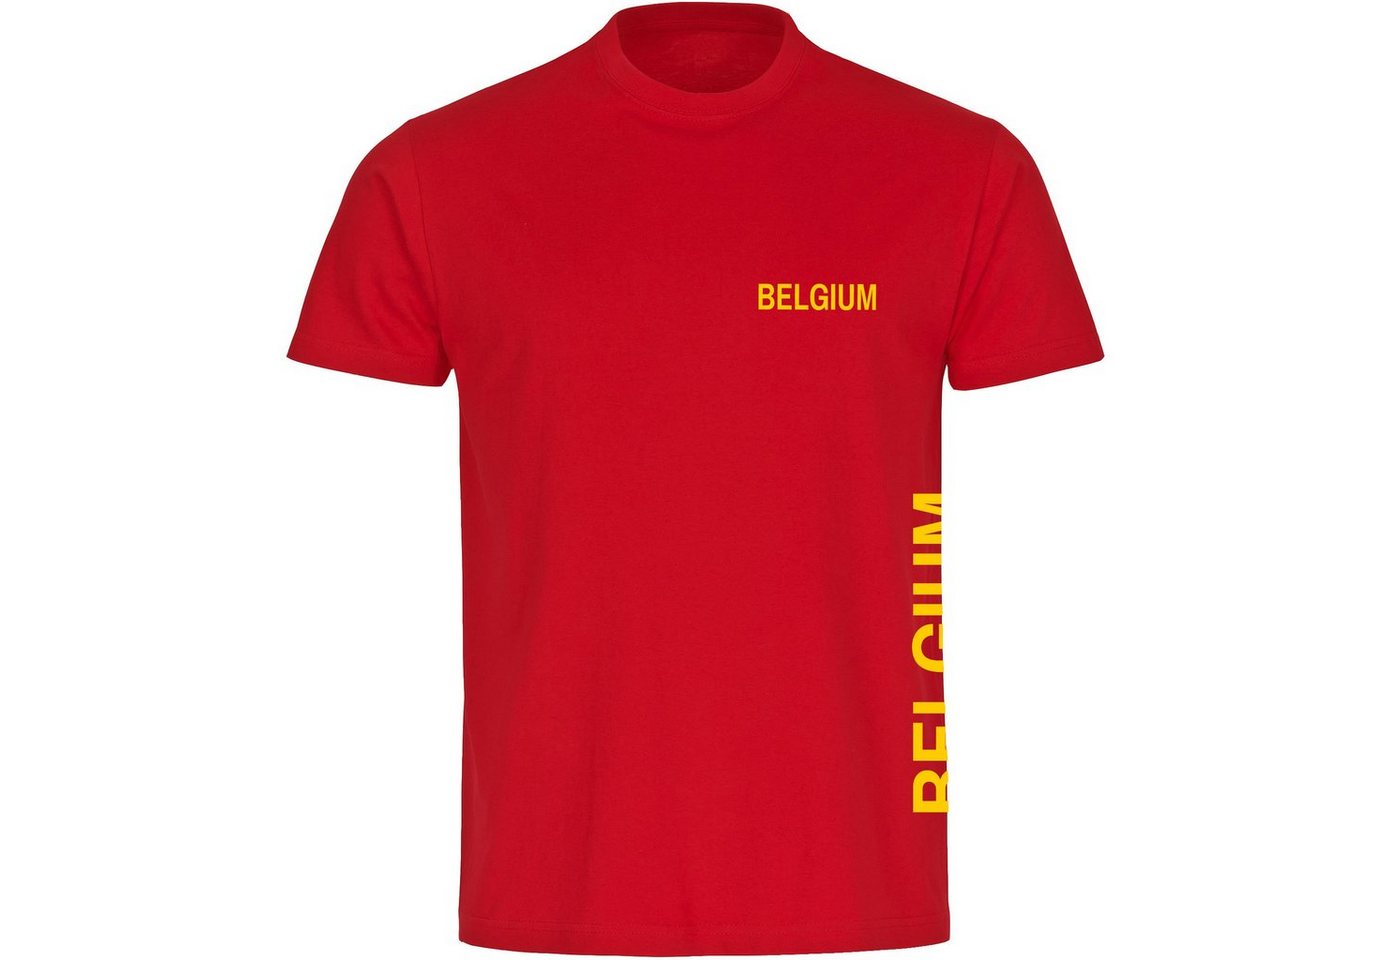 multifanshop T-Shirt Herren Belgium - Brust & Seite - Männer von multifanshop